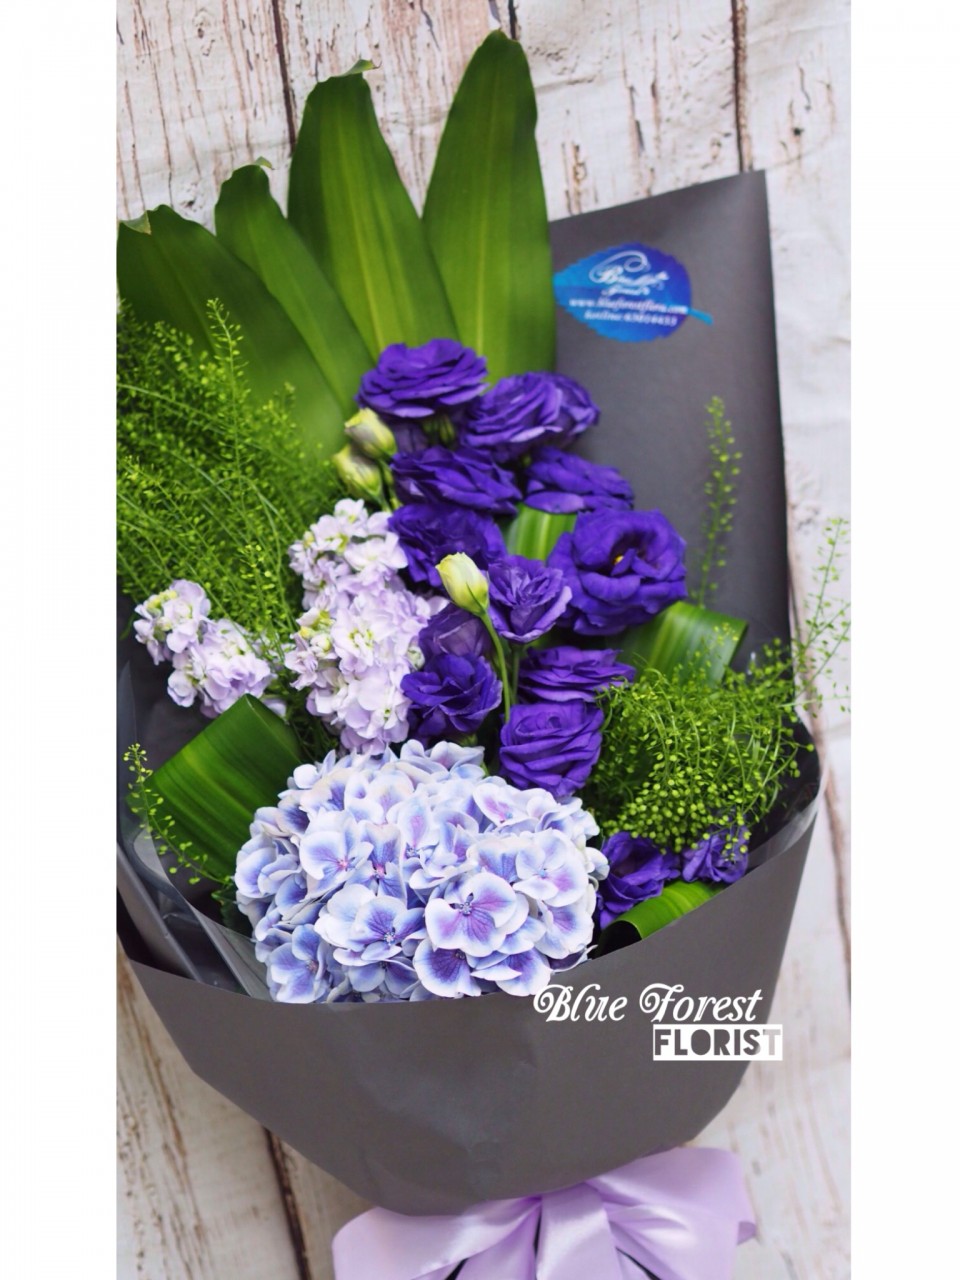 華麗邂逅 洋桔梗配紫繡球長形花束 Blue Forest Florist